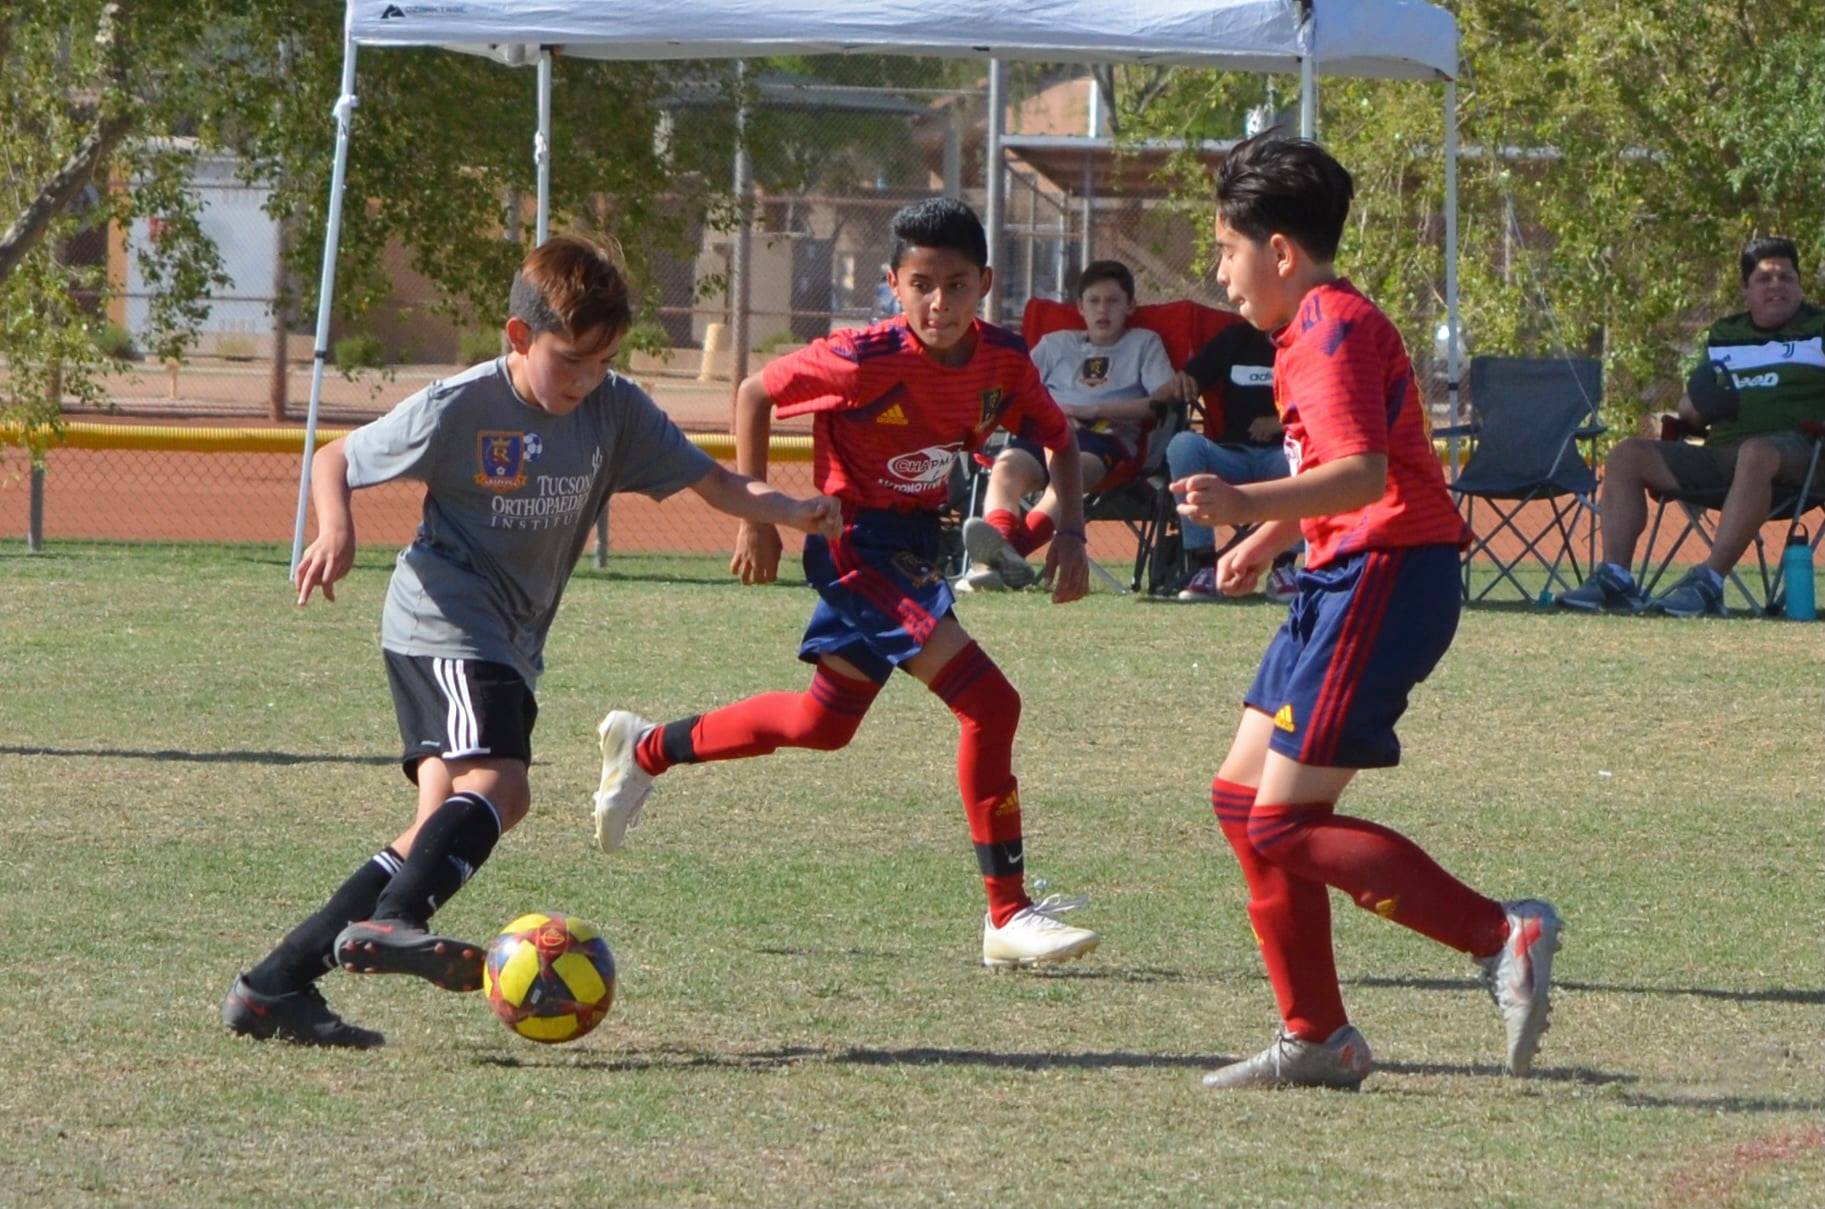 7v7 Summer Soccer | RSL-AZ Southern Arizona